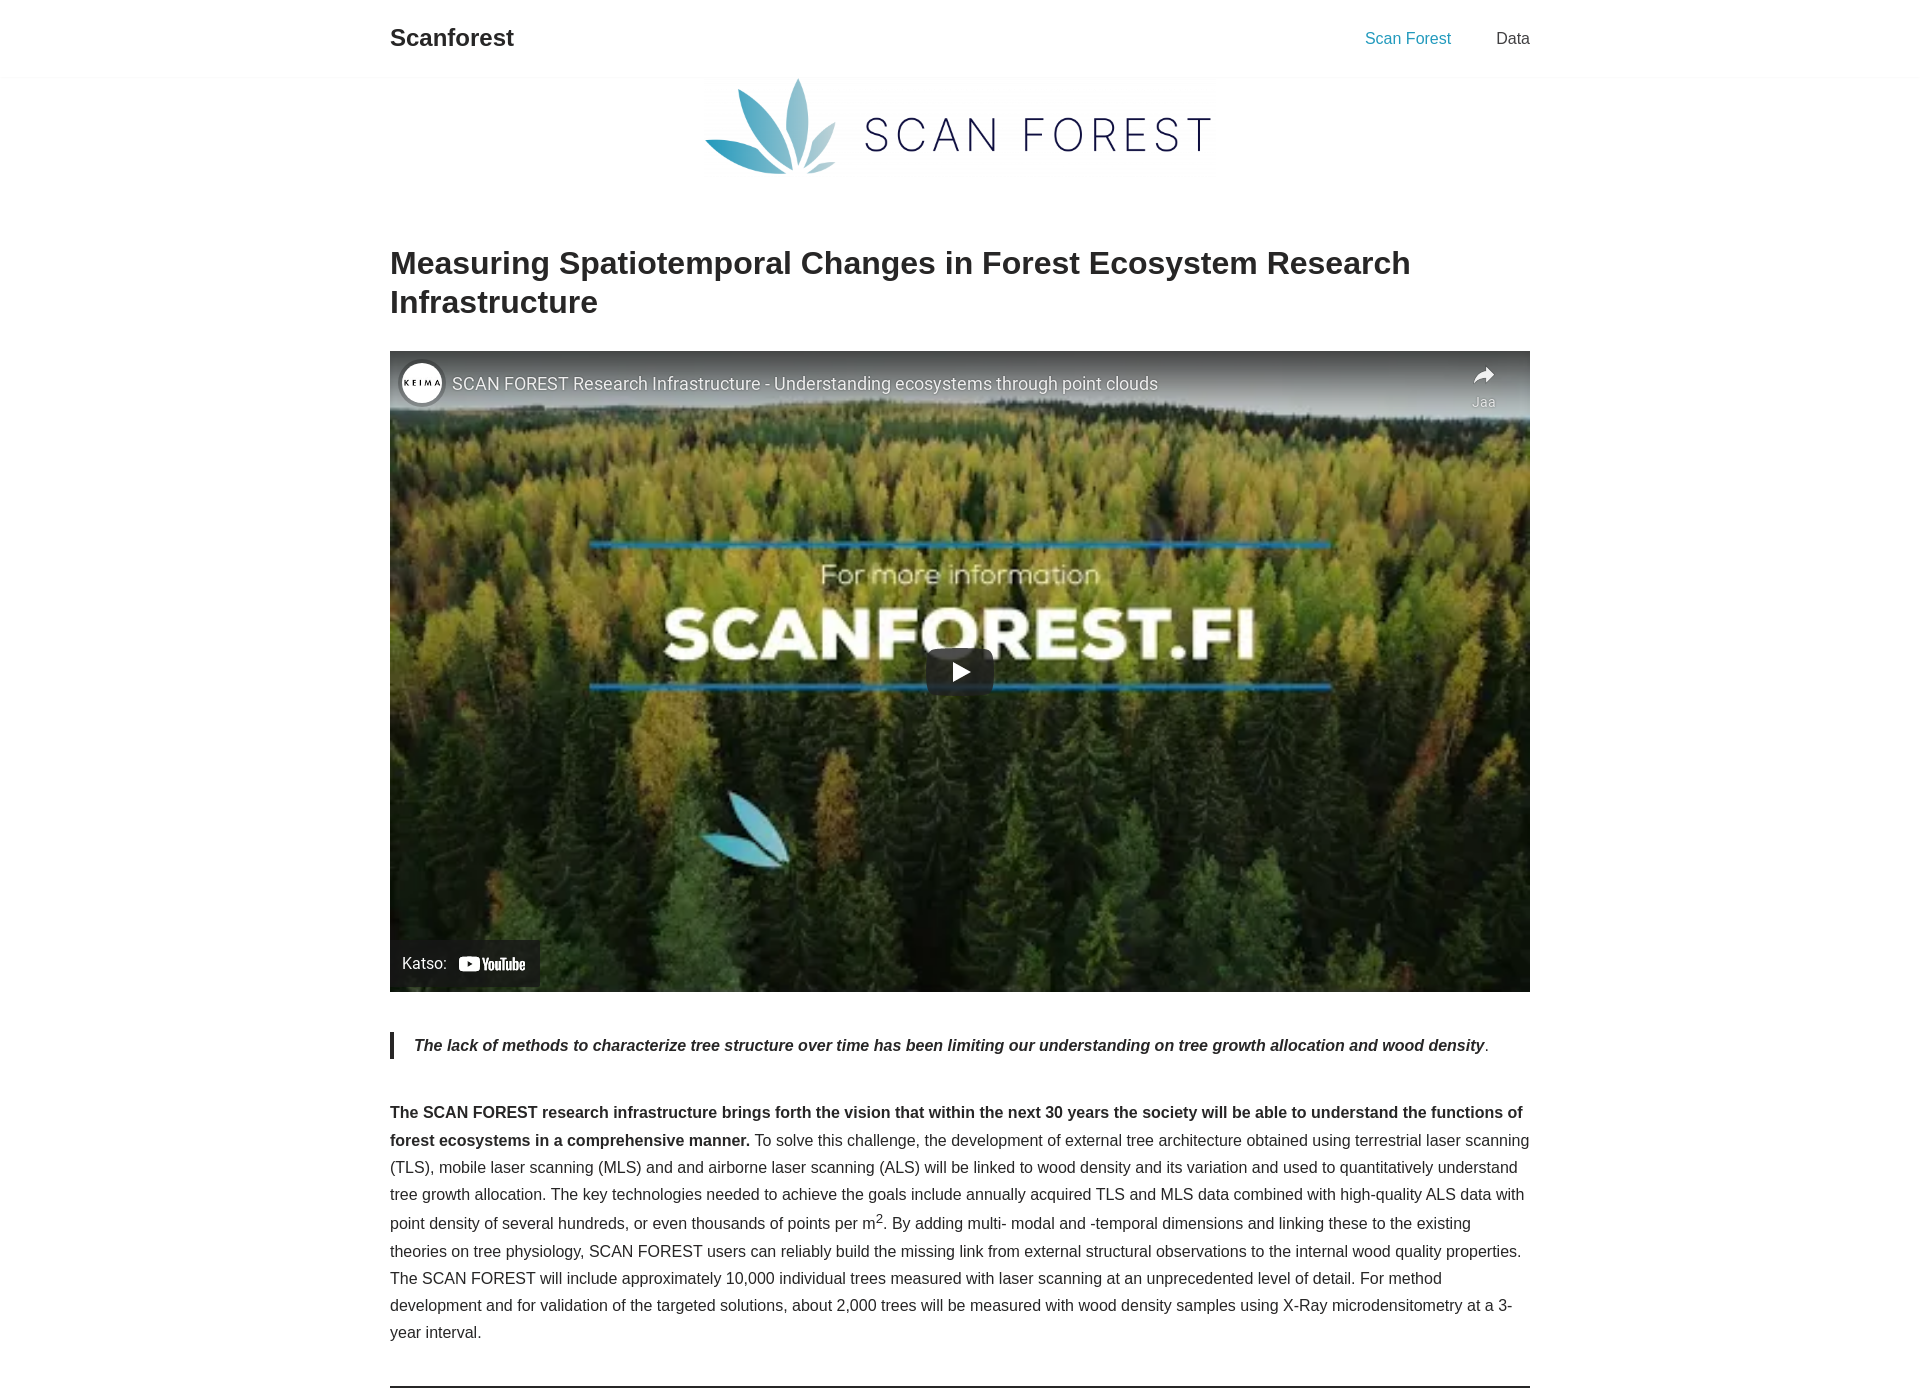 Screenshot for scanforest.fi